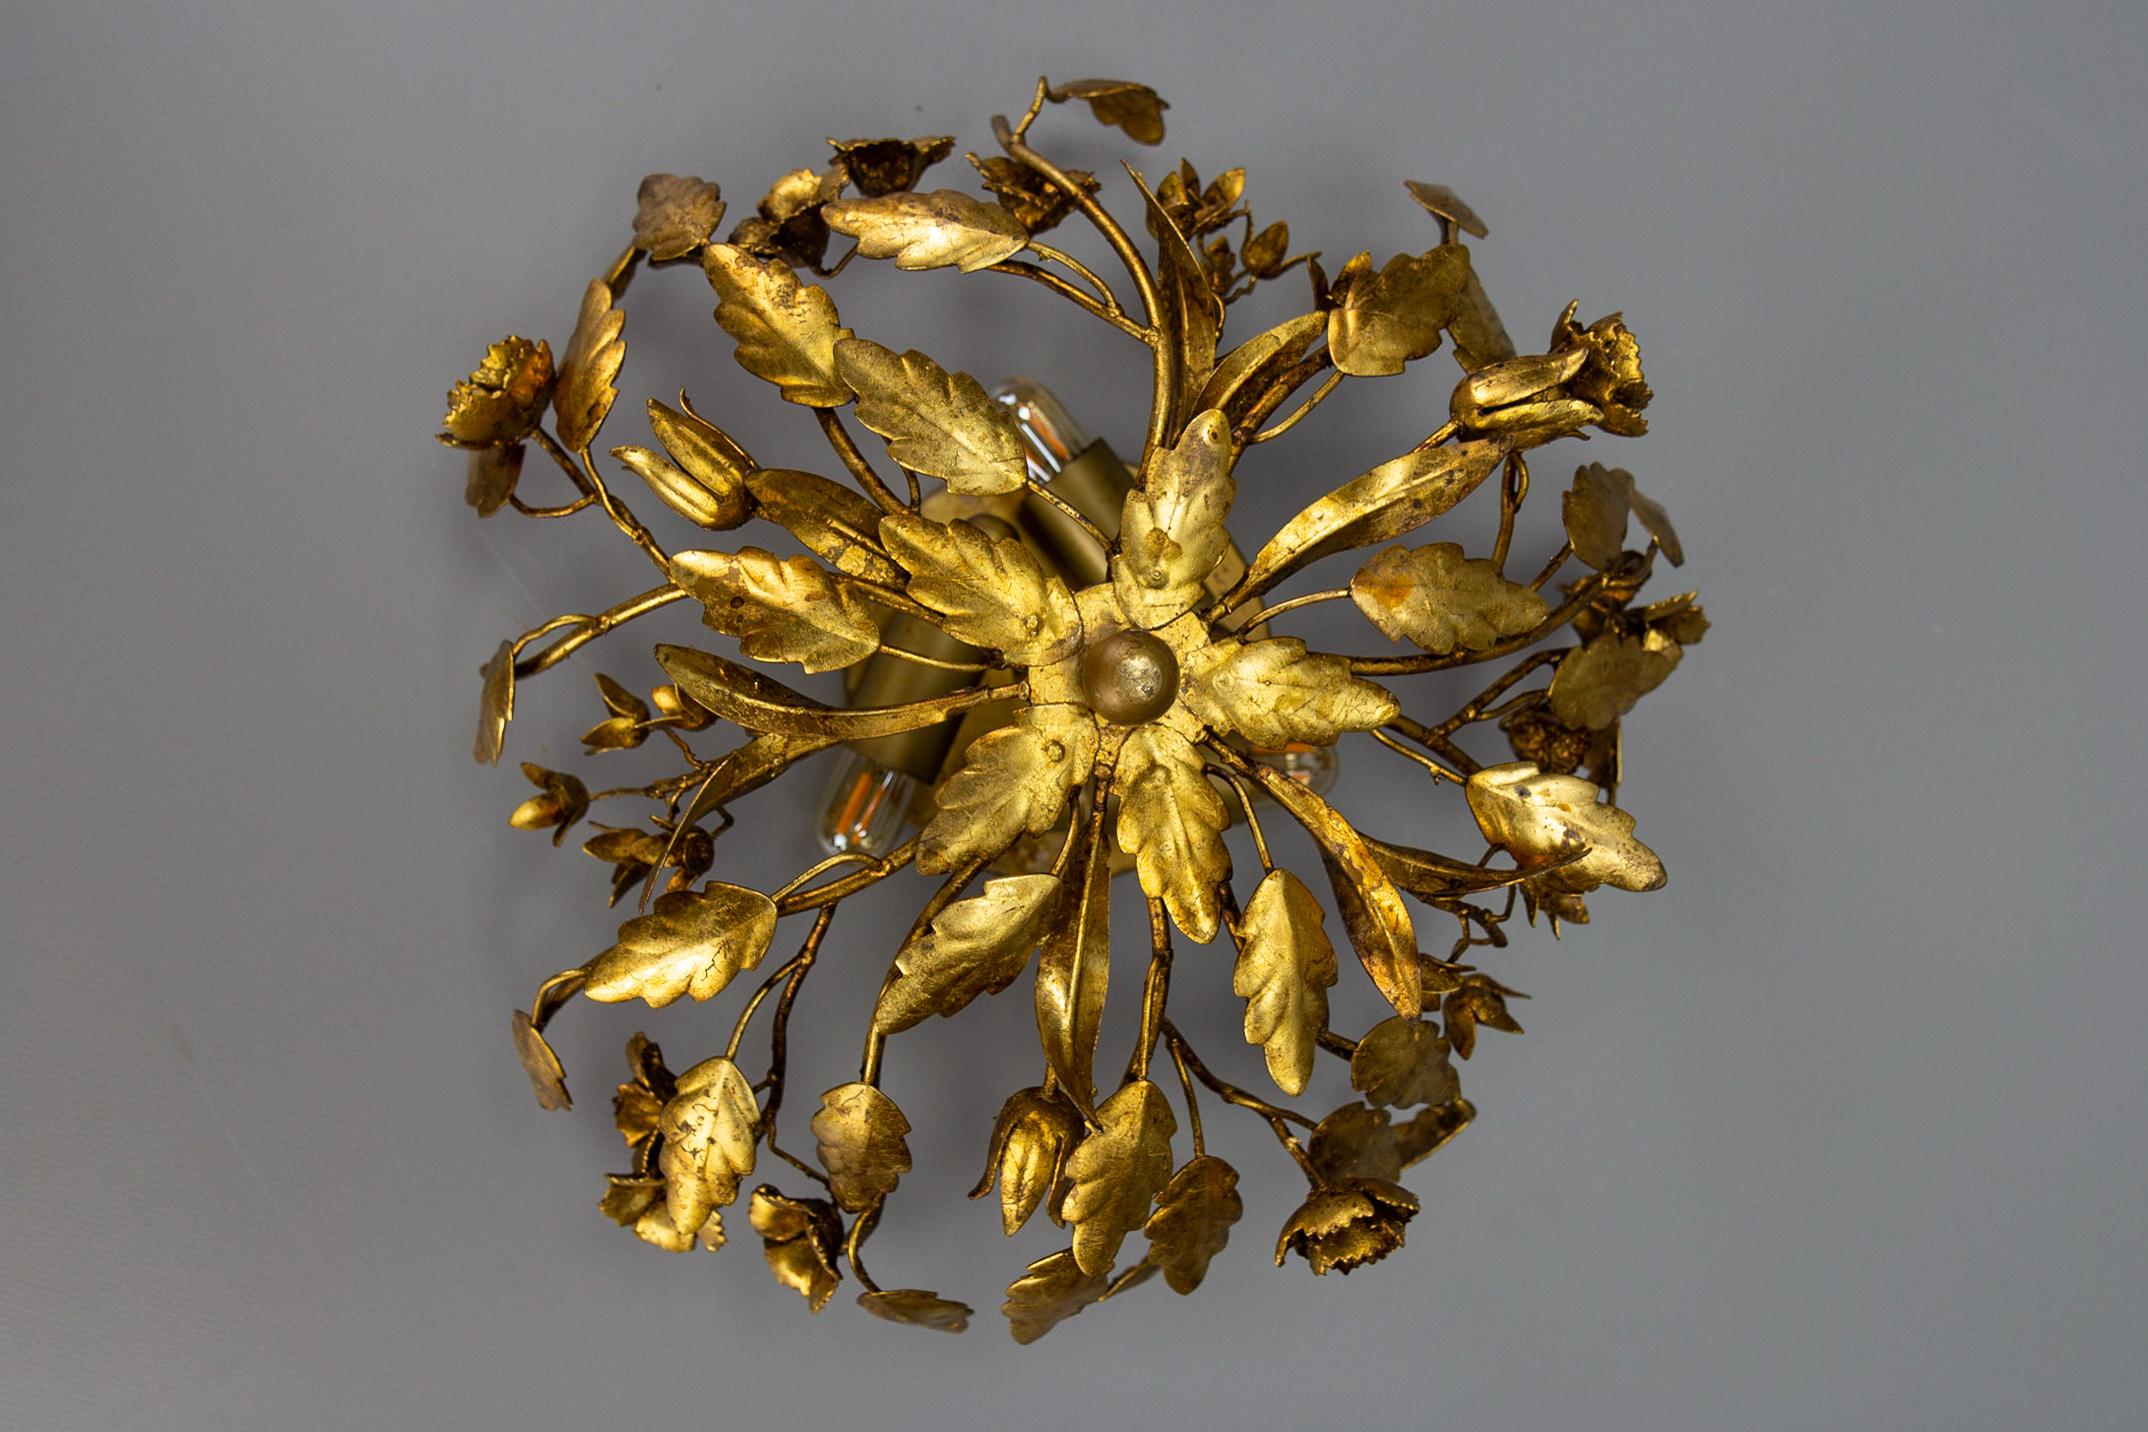 Hollywood Regency Stil, vergoldetes Metall, florale Deckenleuchte, Deutschland, ca. 1970er Jahre.
Diese bezaubernde florale Deckenleuchte aus vergoldetem Metall im Hollywood-Regency-Stil ist mit wunderschön geformten Blättern und Blumen